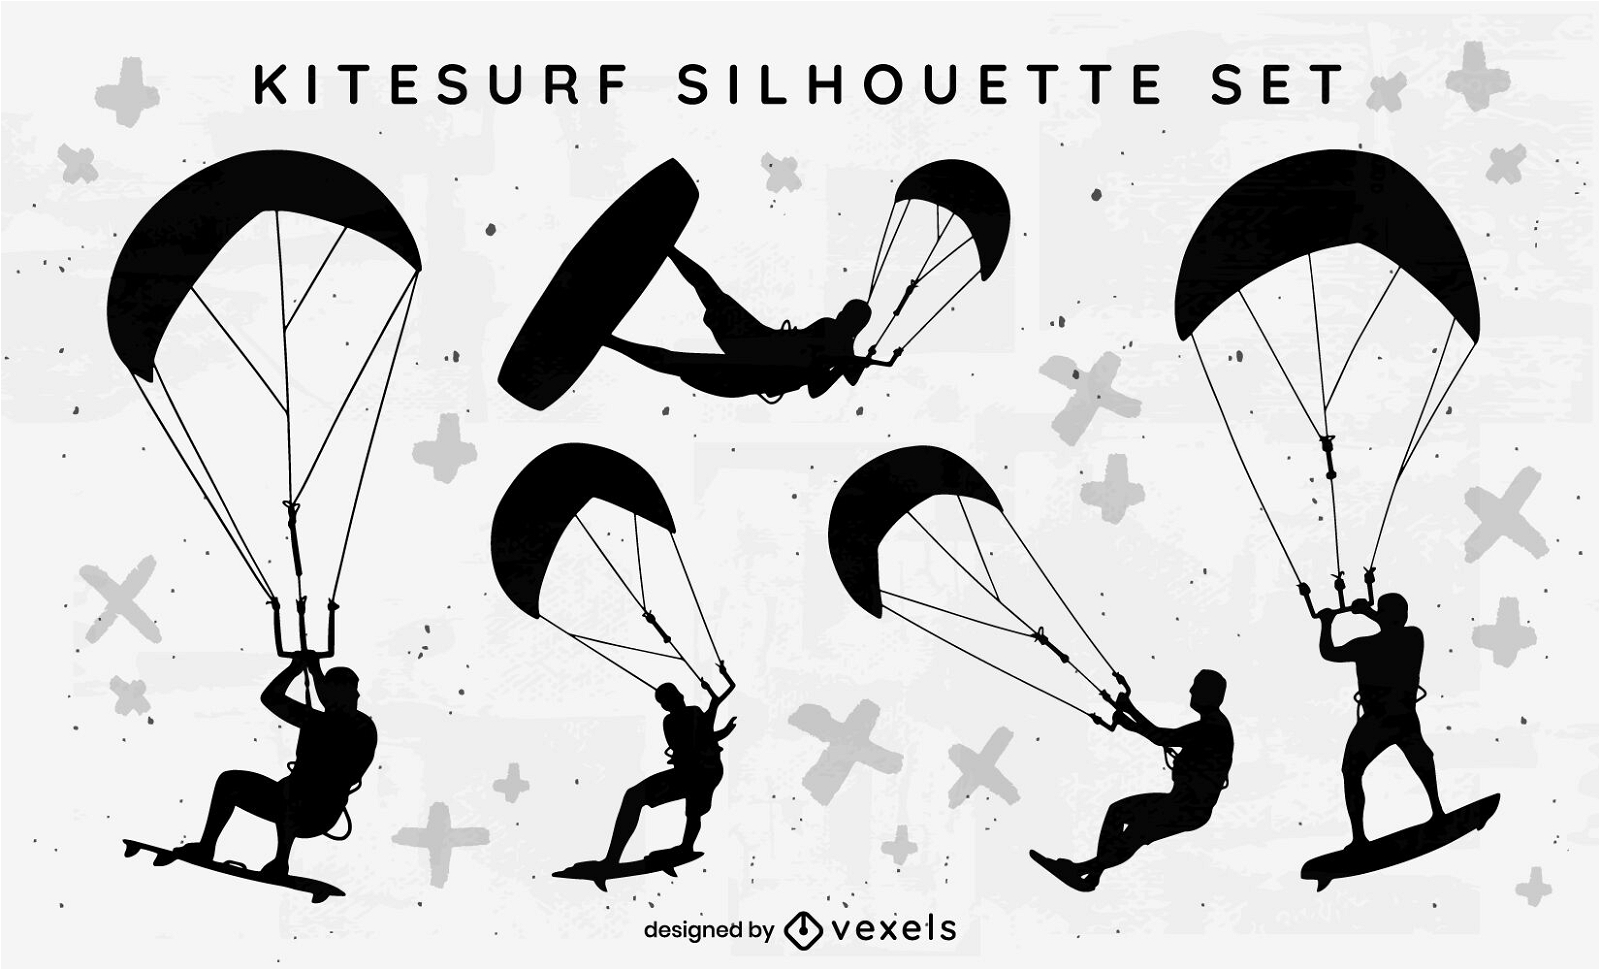 Set de siluetas de personas haciendo kitesurf